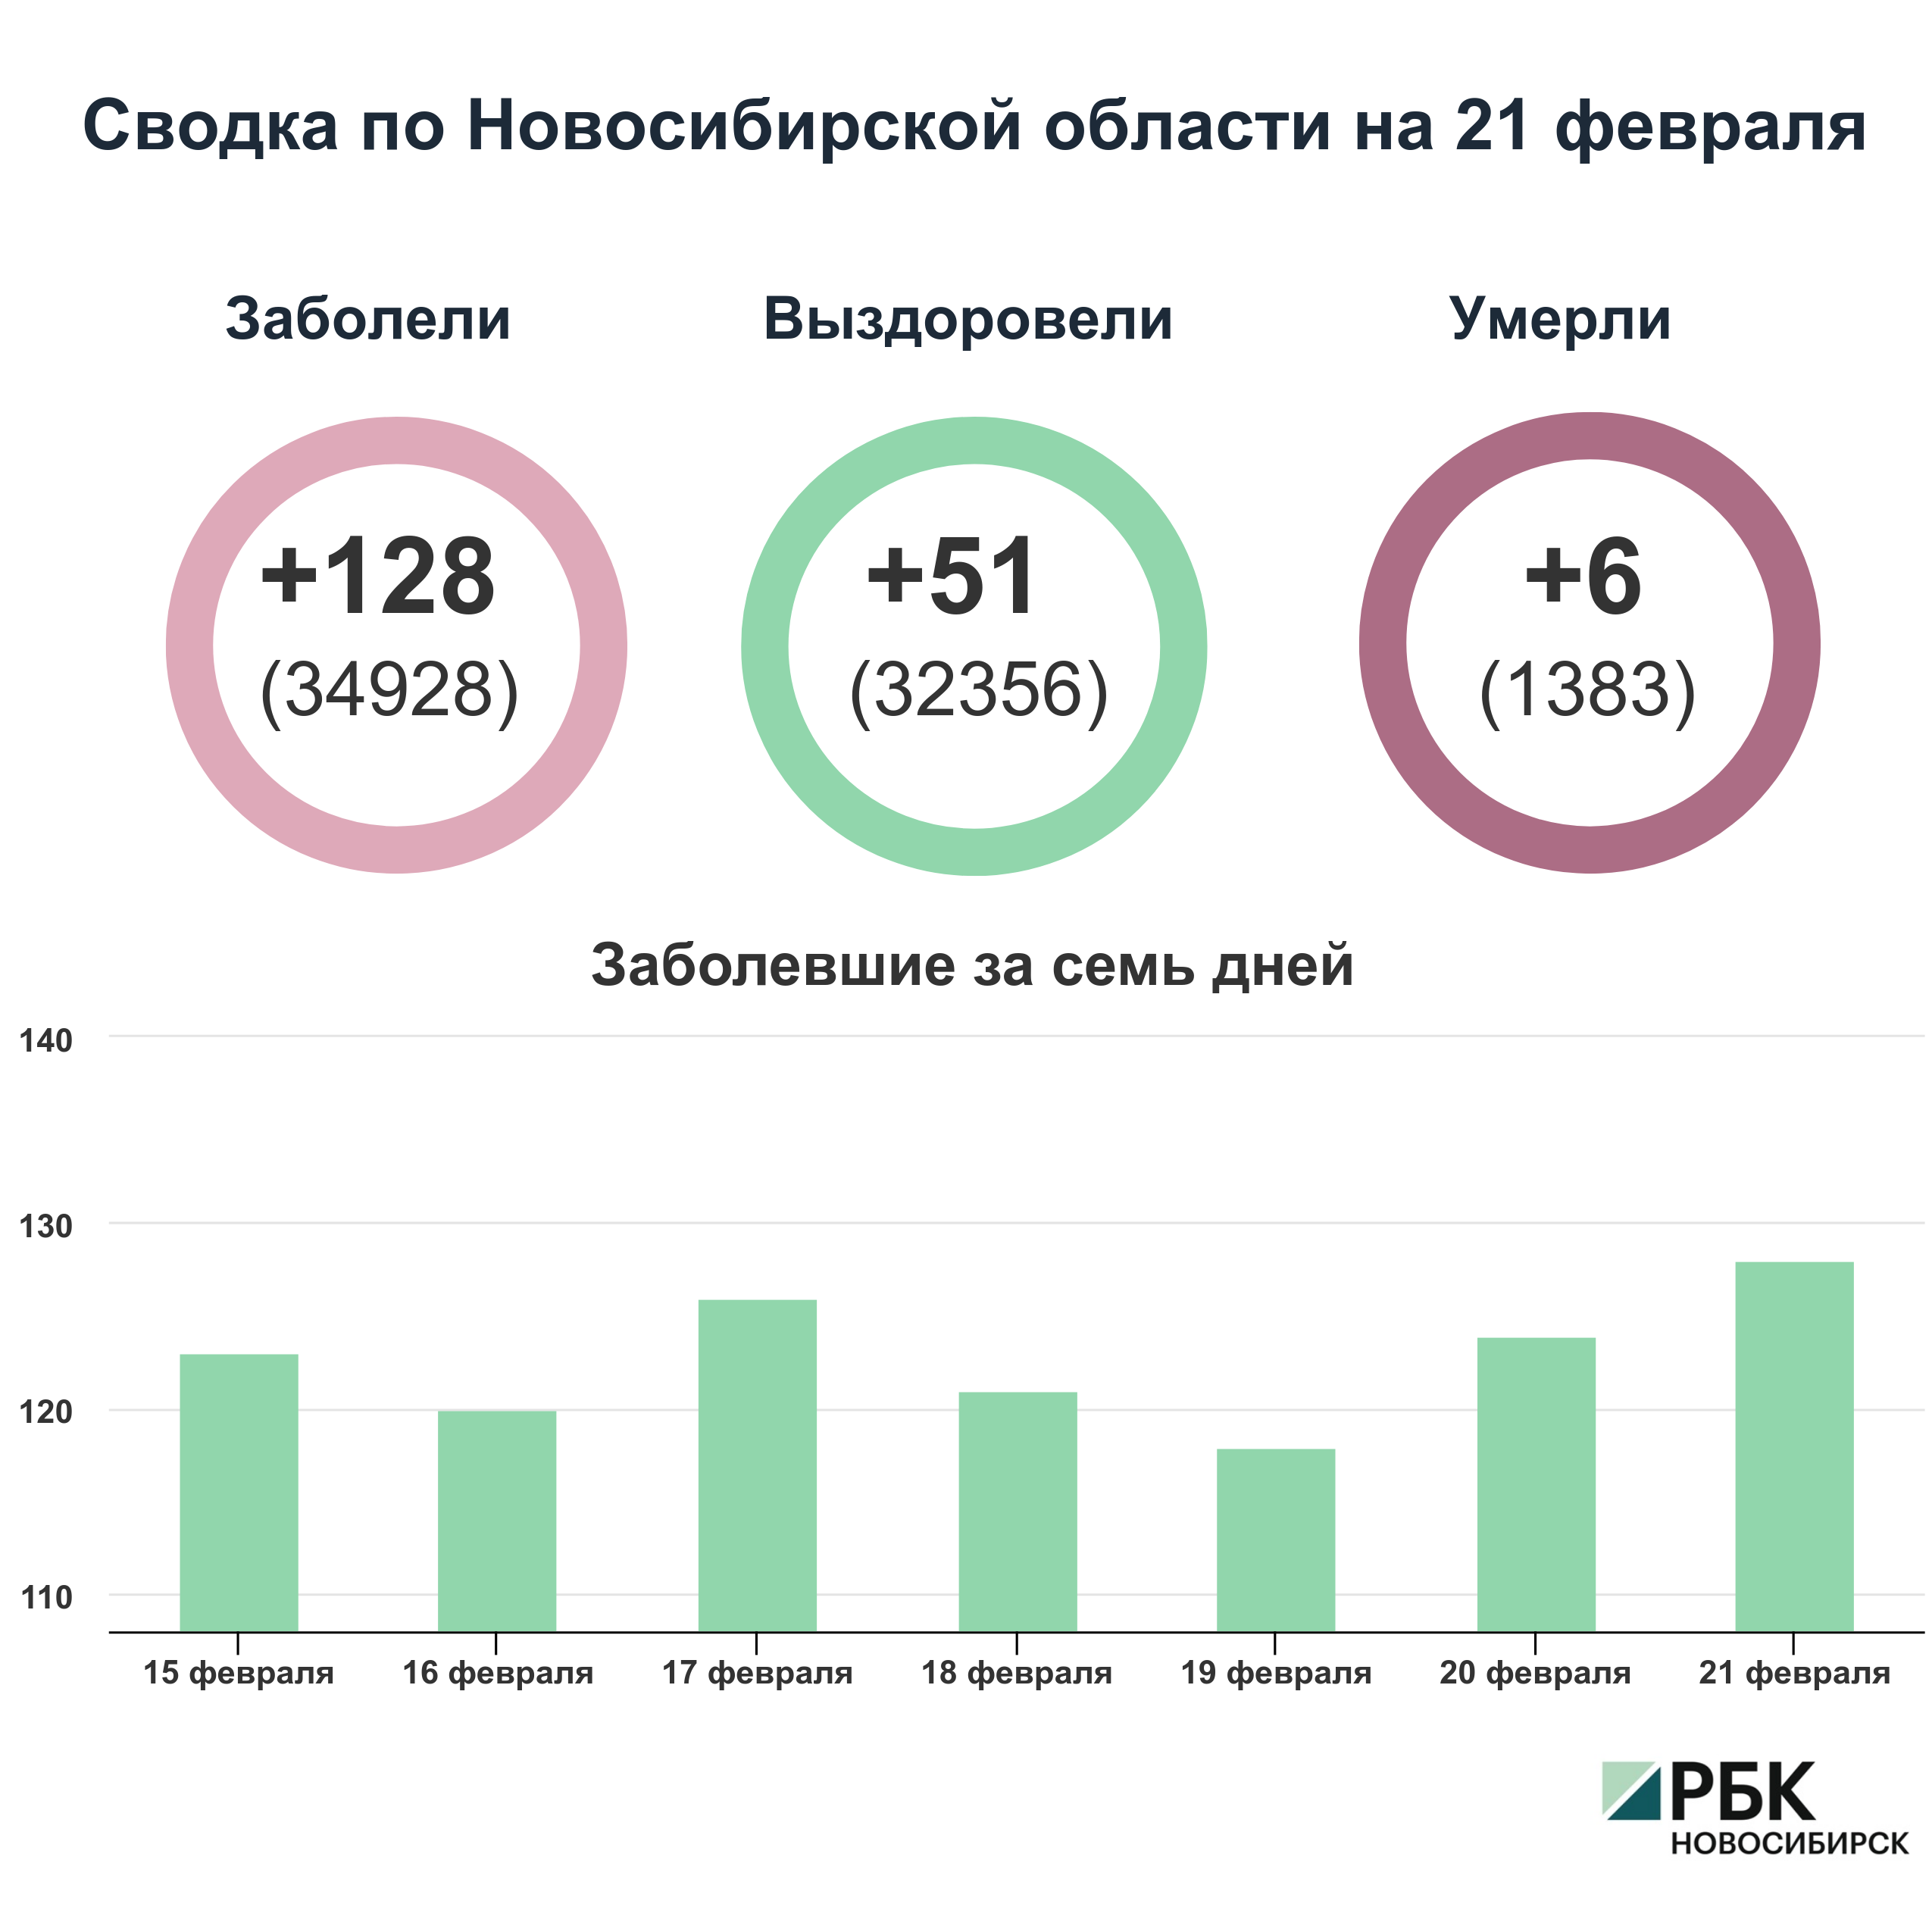 Коронавирус в Новосибирске: сводка на 21 февраля